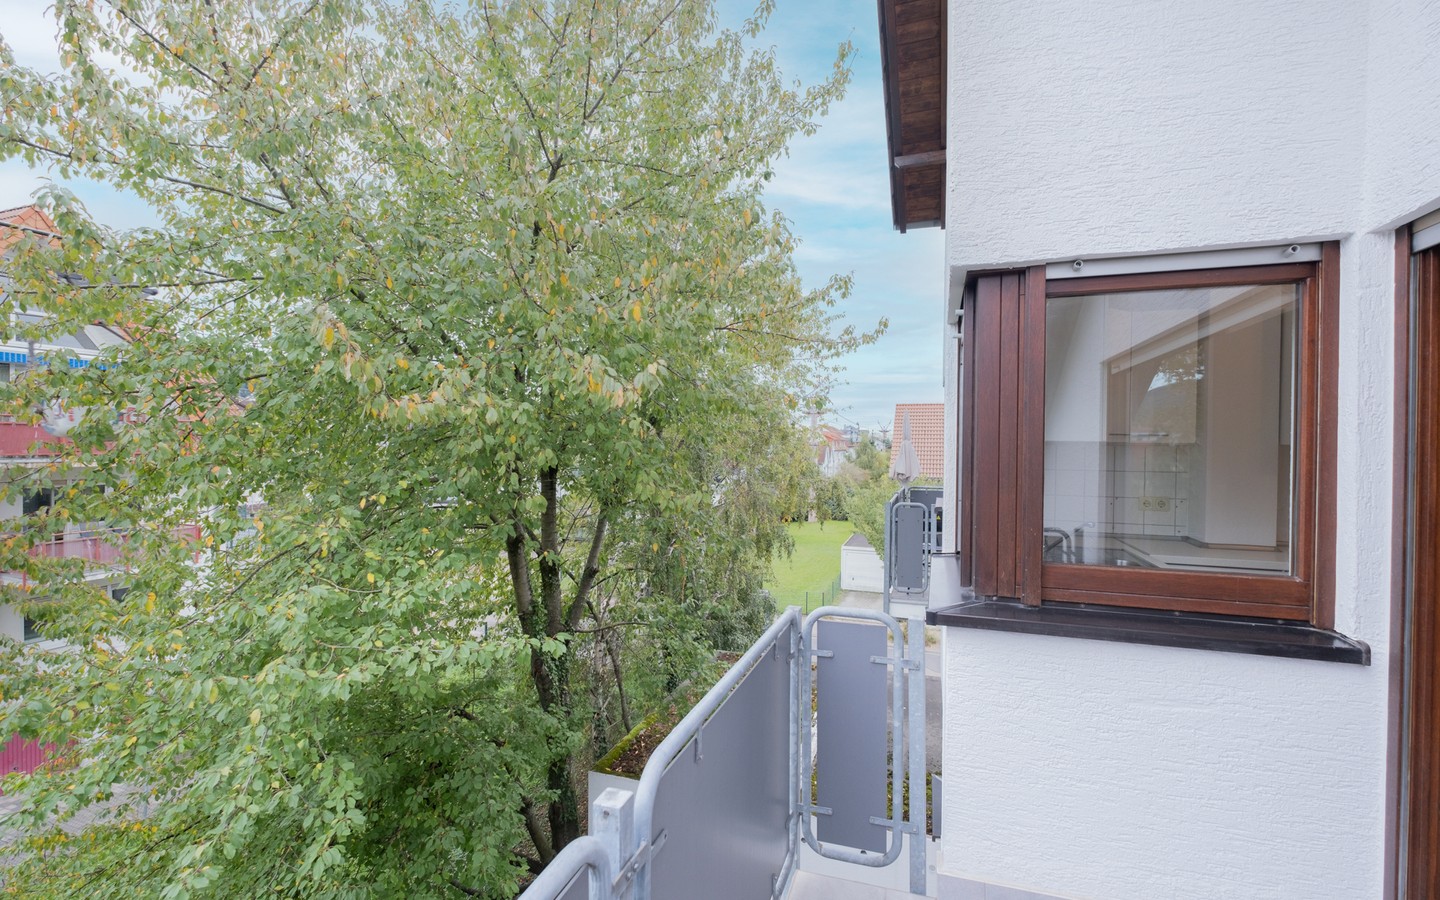 Balkon - Neues Eigenheim oder neue Kapitalanlage: 2-Zimmer-Dachwohnung in Leimen - sofort bezugsfrei!